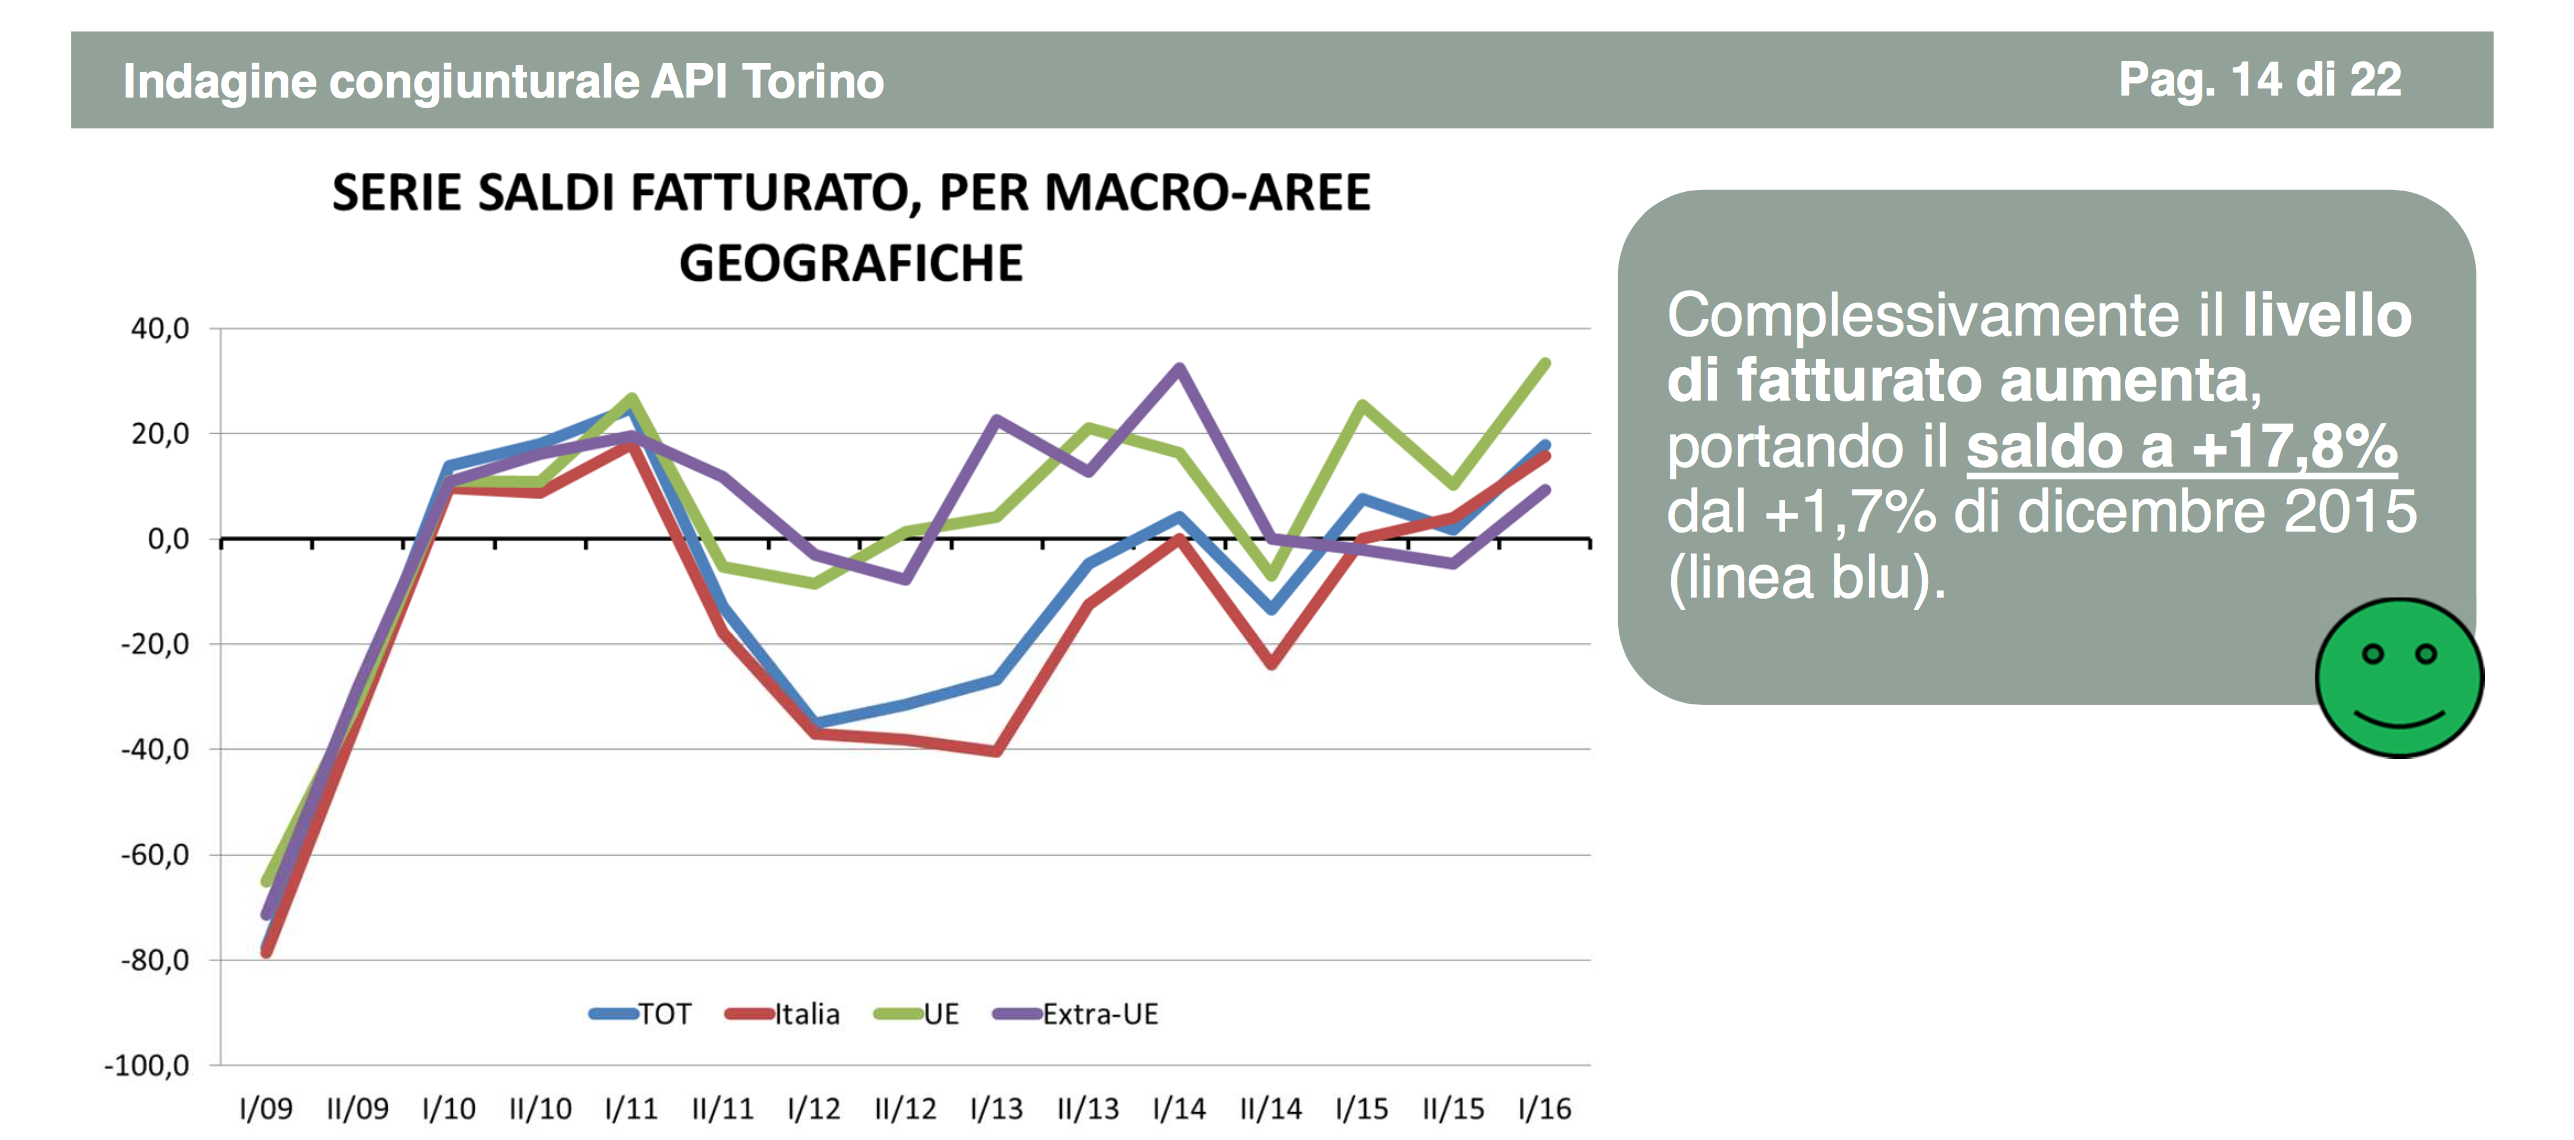 Le imprese tornano a investire in Piemonte: le previsioni di Api Torino del 2° semestre 2016